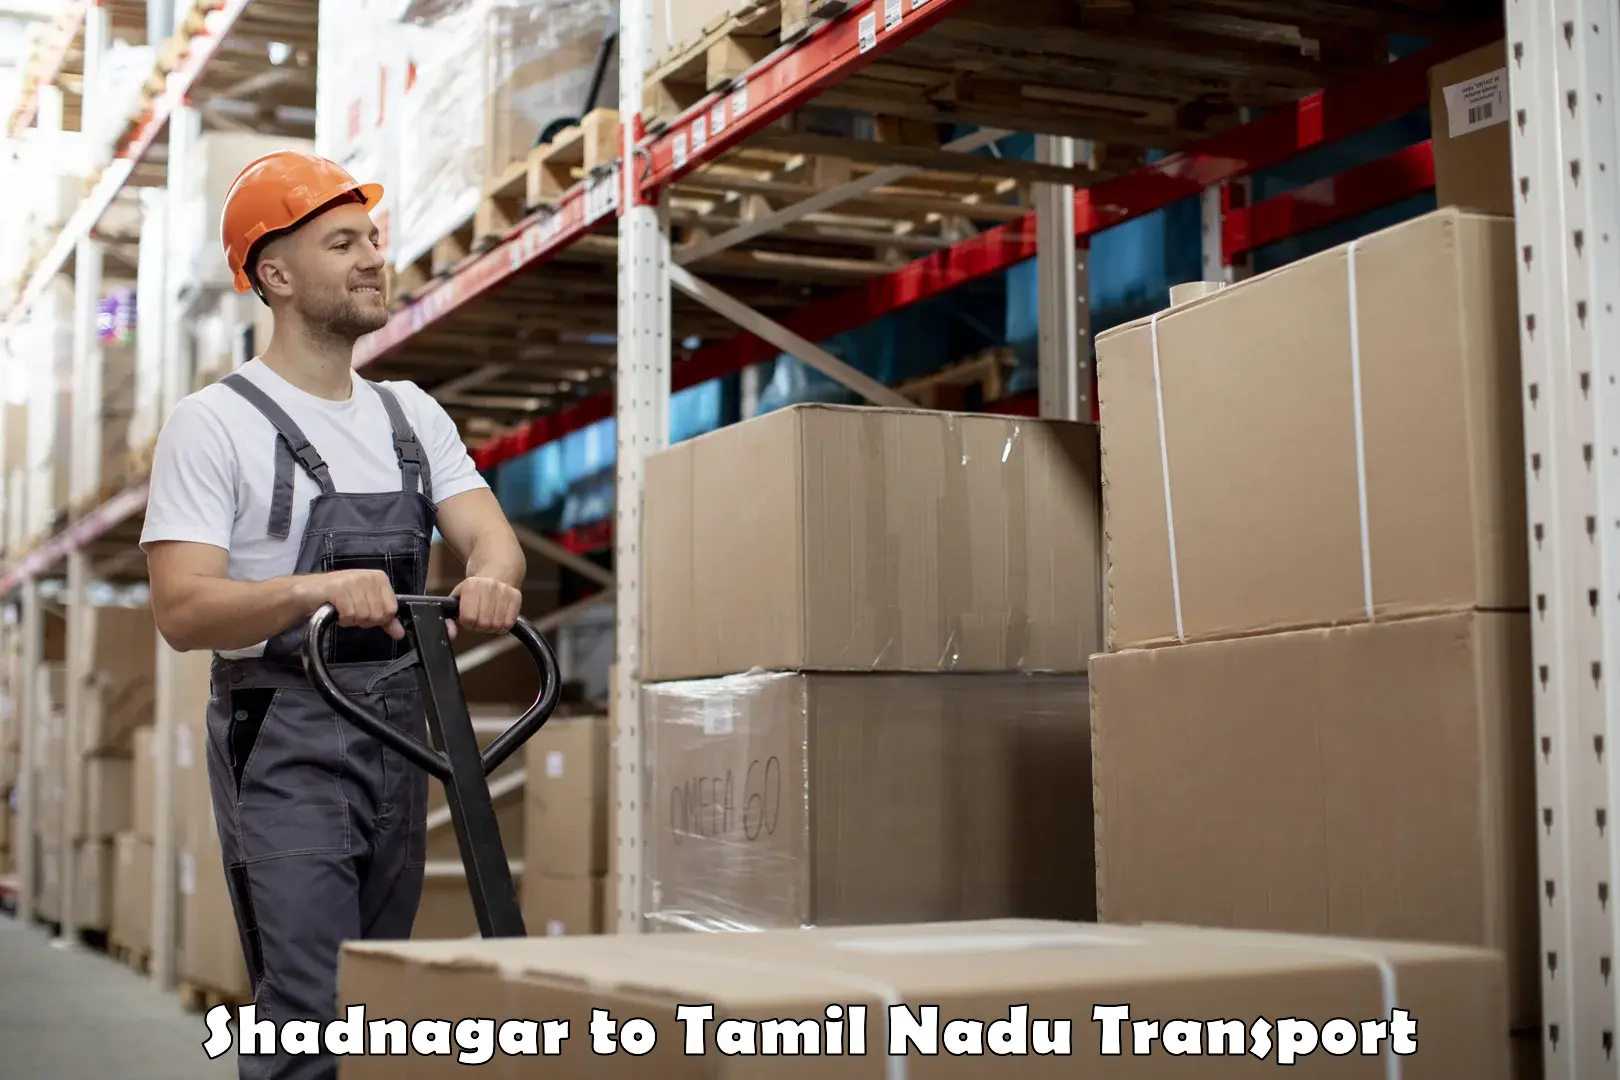 Transport in sharing Shadnagar to Tamil Nadu